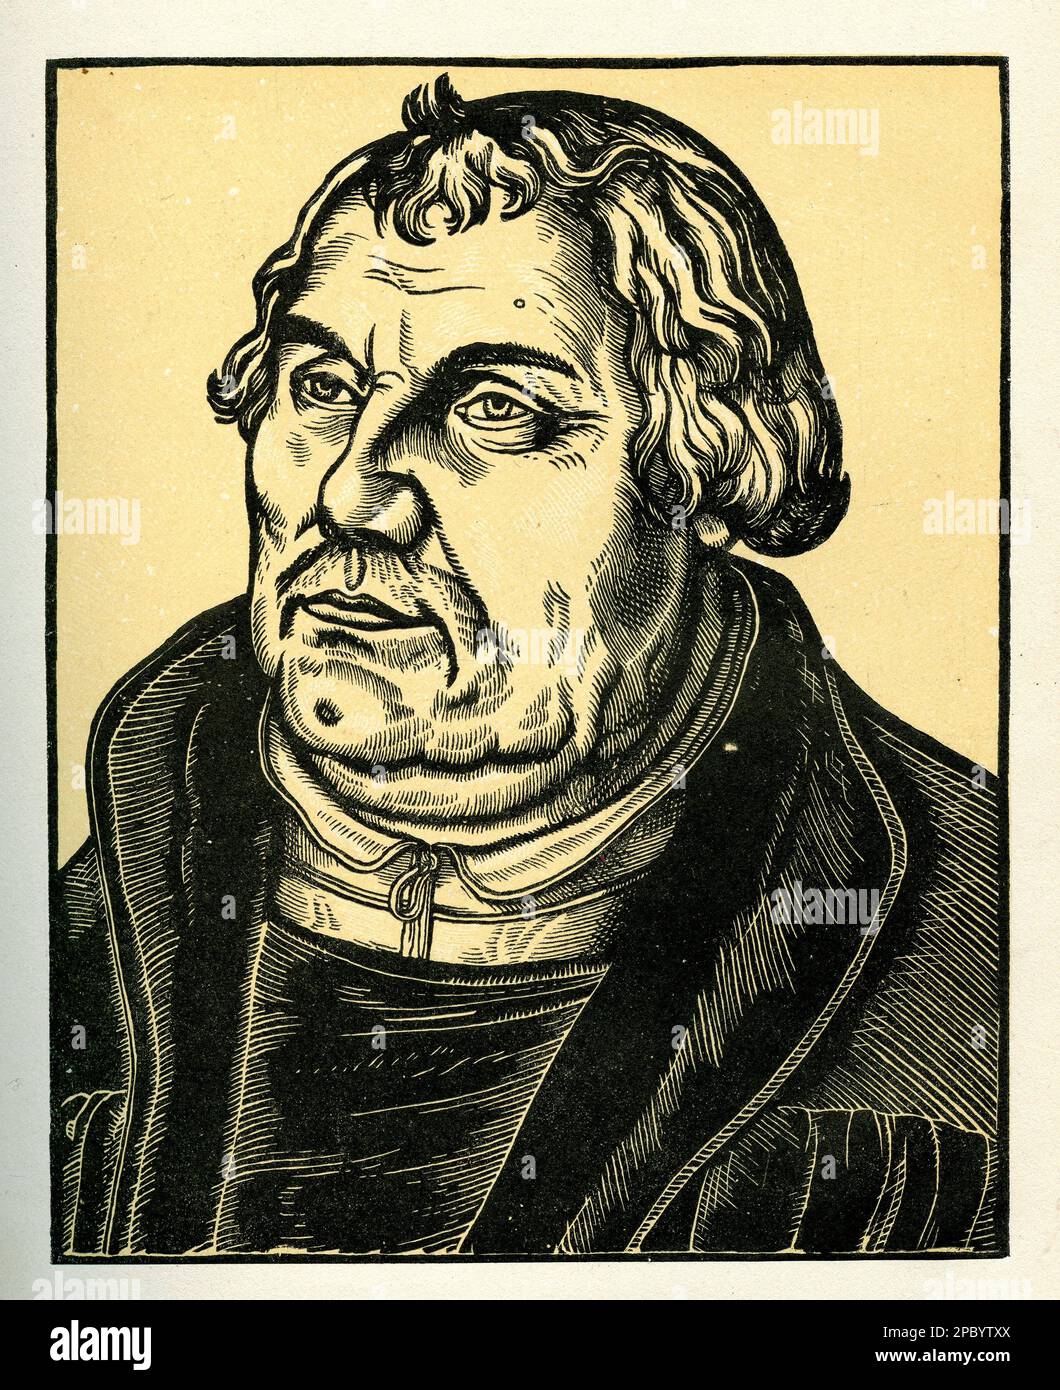 Lucas Cranachs Porträt von Martin Luther zeigt den religiösen Führer mit einem strengen Ausdruck und einem entschlossenen Blick. Luther trägt einen Mönchstrauß. Das Gemälde spiegelt die Essenz der protestantischen Reformation und Luthers Schlüsselrolle darin wider. Stockfoto